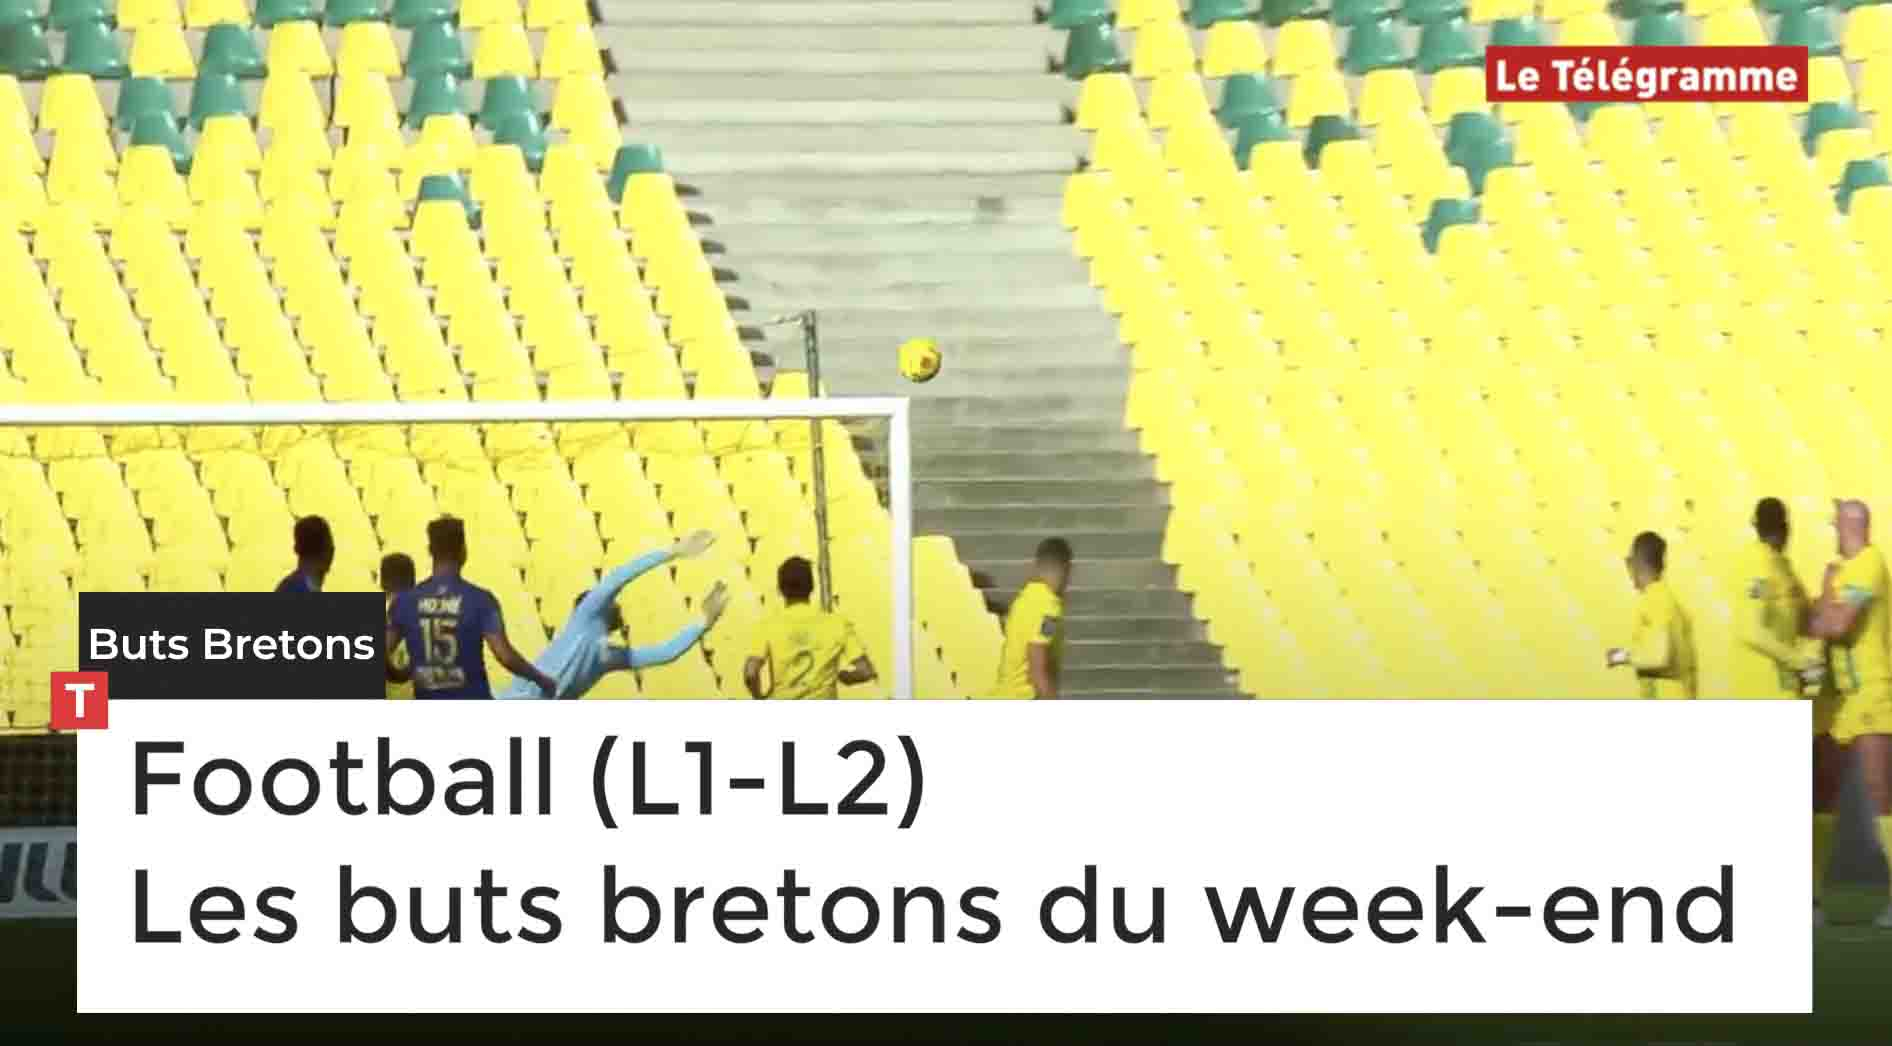 Football (L1-L2) Les buts bretons du week-end (Le Télégramme)